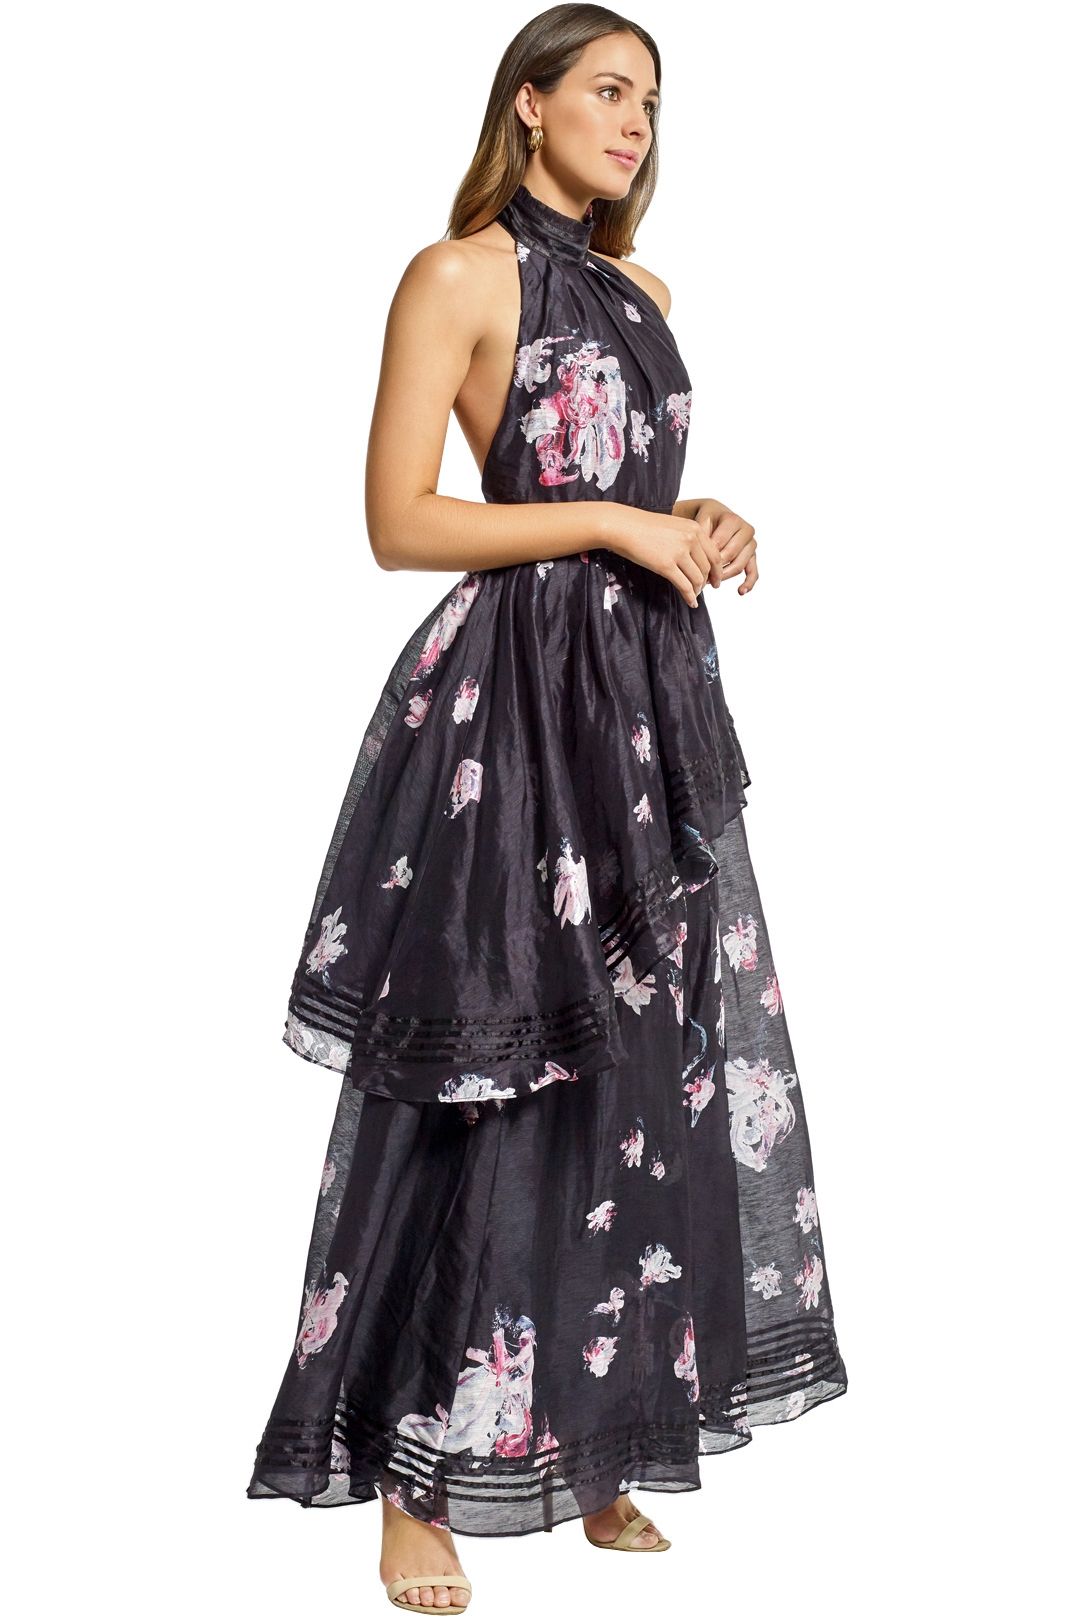 Aje - Sienna Dress - Black Floral - Side